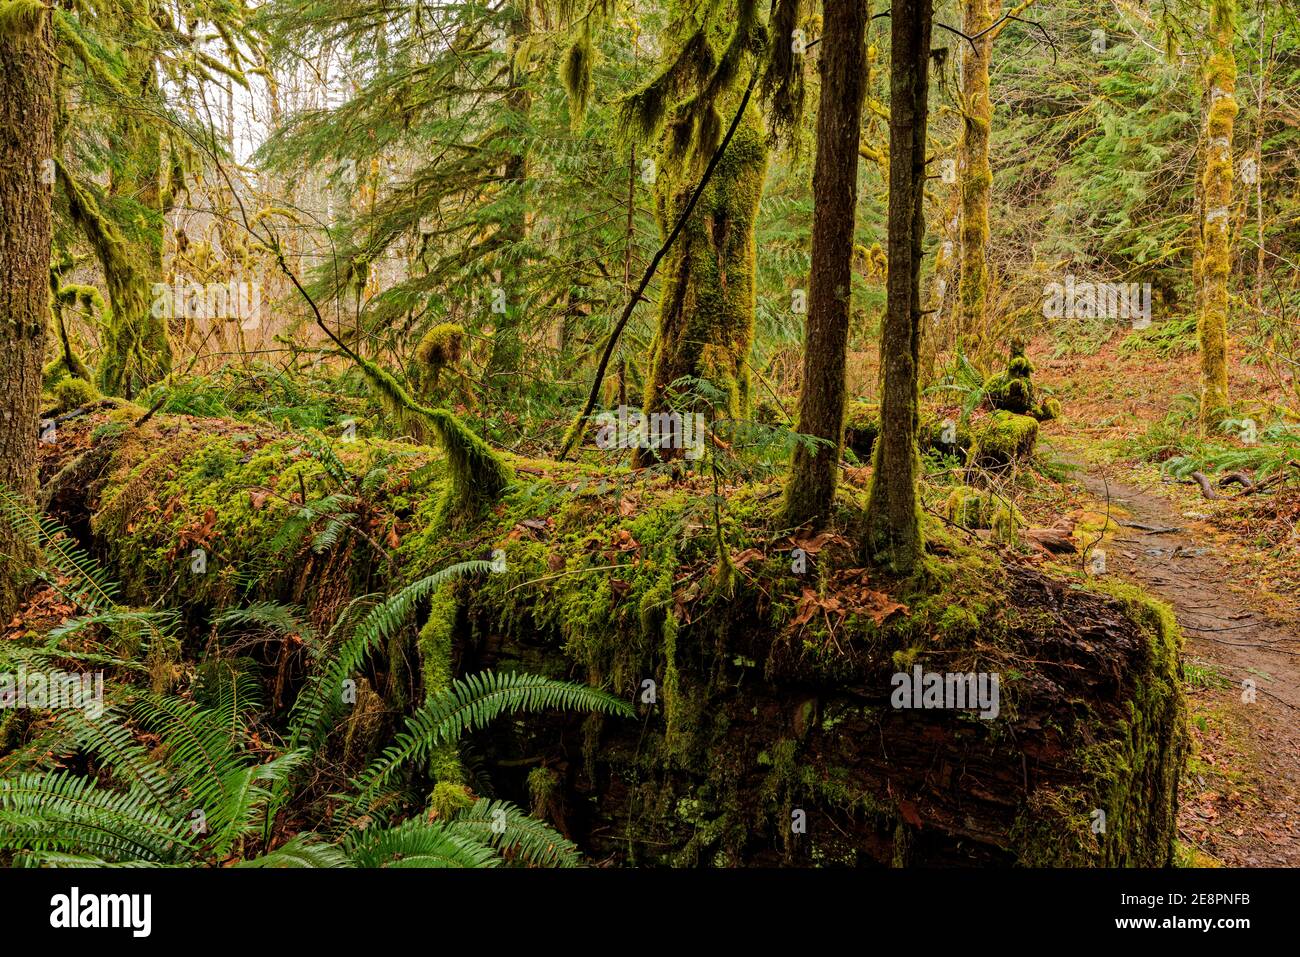 Dies ist ein Nurese-Baumstamm mit jungen Bäumen, die aus ihm in der Lachs-Huckleberry Wilderness in Oregon wachsen. Das Gebiet ist ein gemäßigter Regenwald. Stockfoto